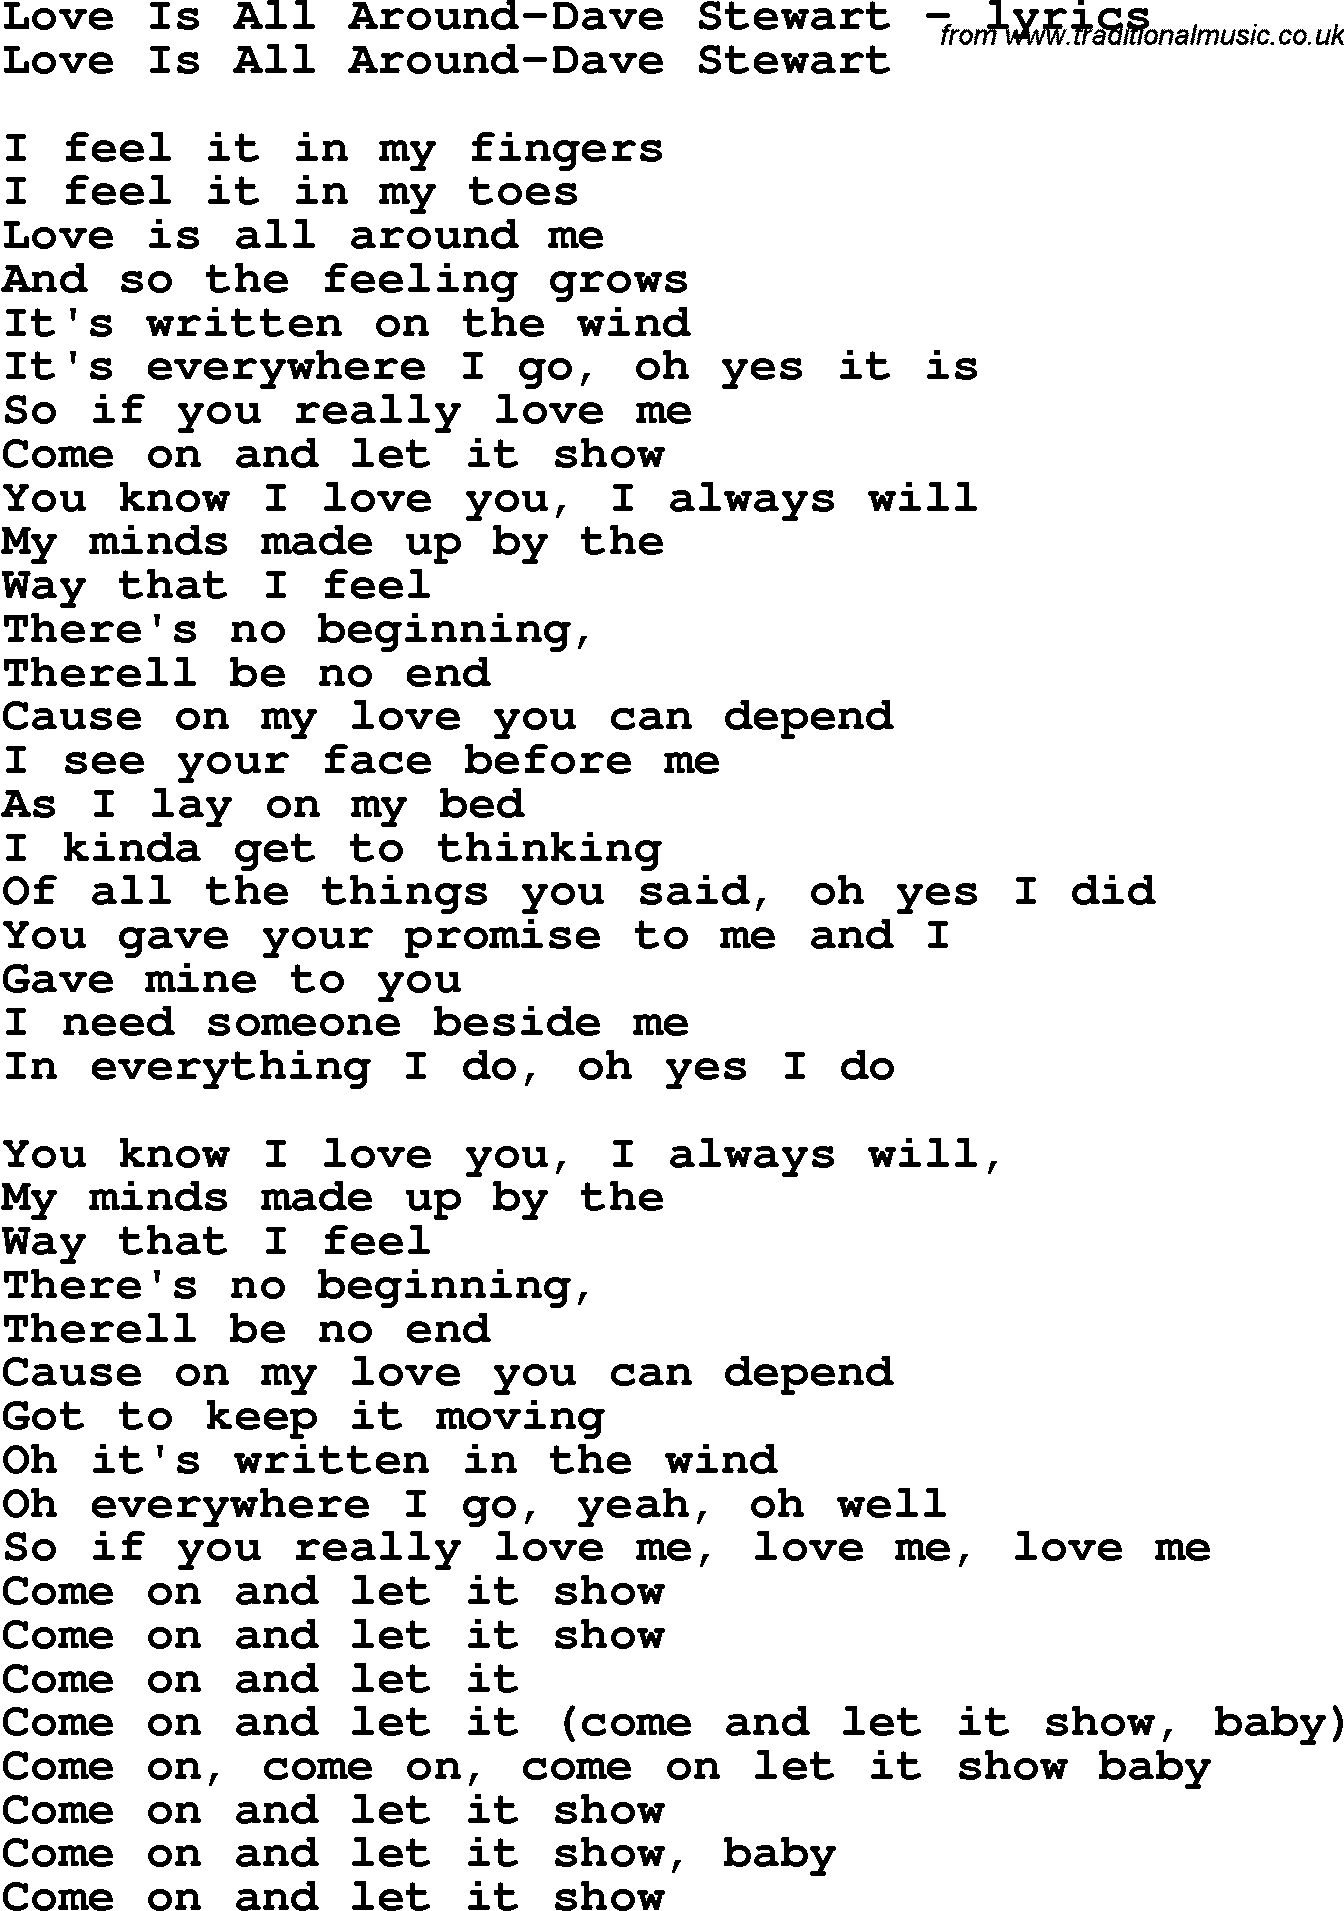 Love Song Lyrics for: Love Is All Around-Dave Stewart